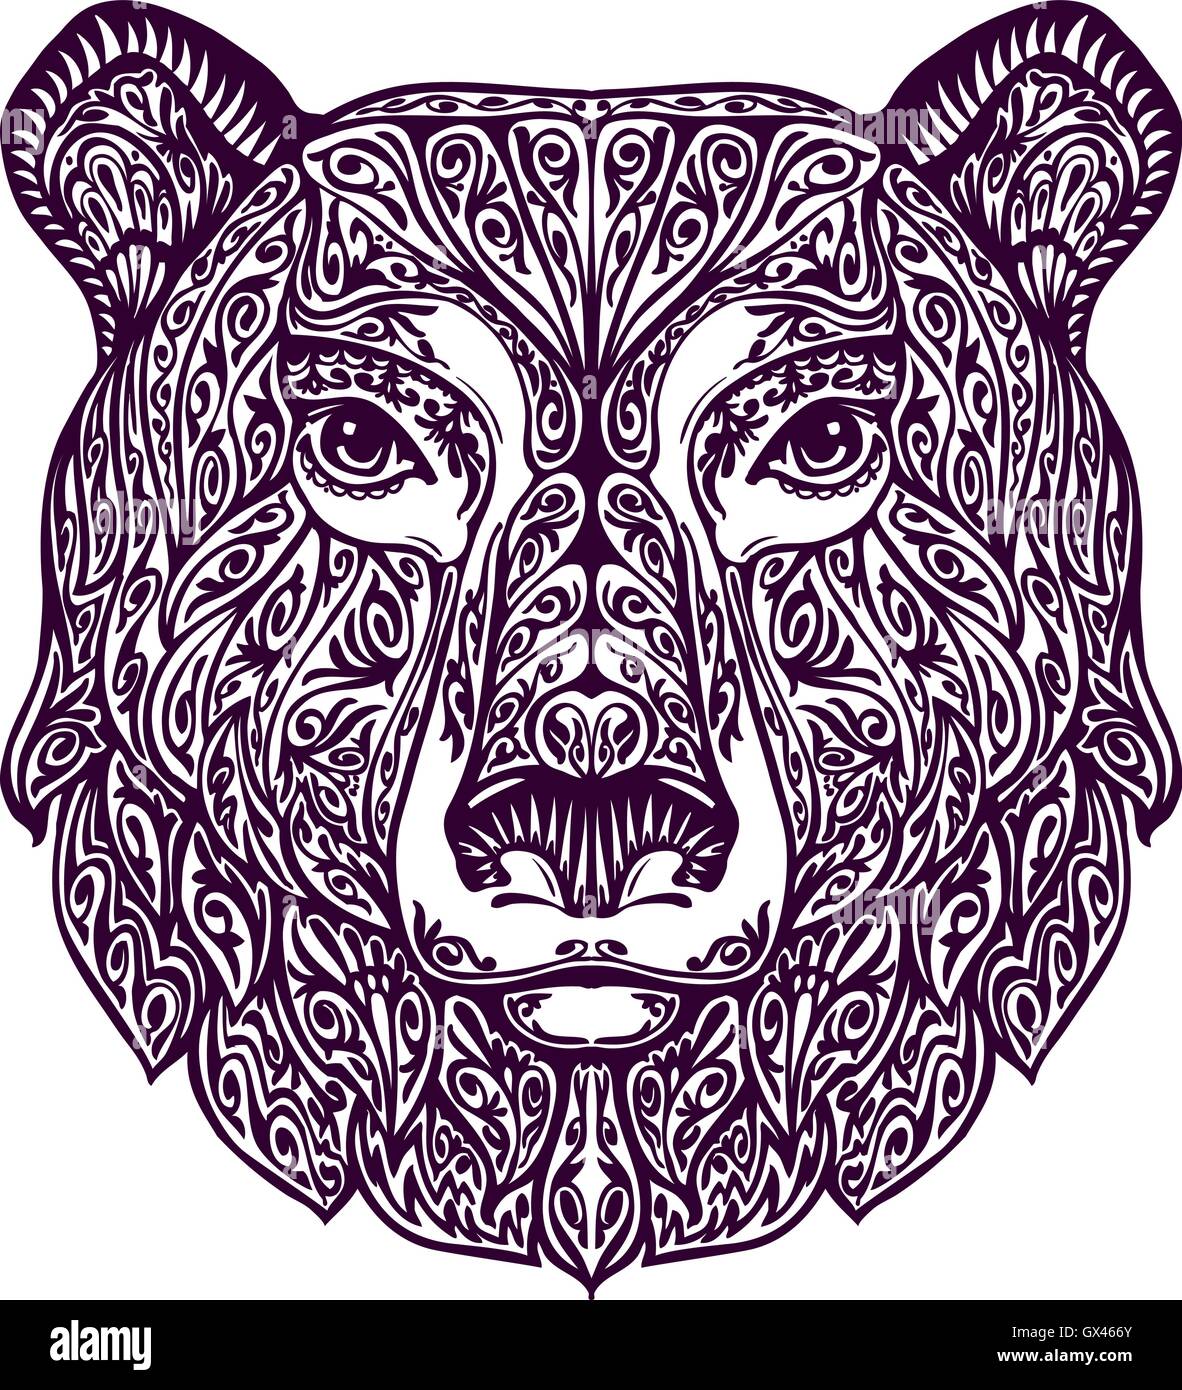 Ornata etnica orso. Disegnata a mano illustrazione vettoriale con elementi floreali Illustrazione Vettoriale